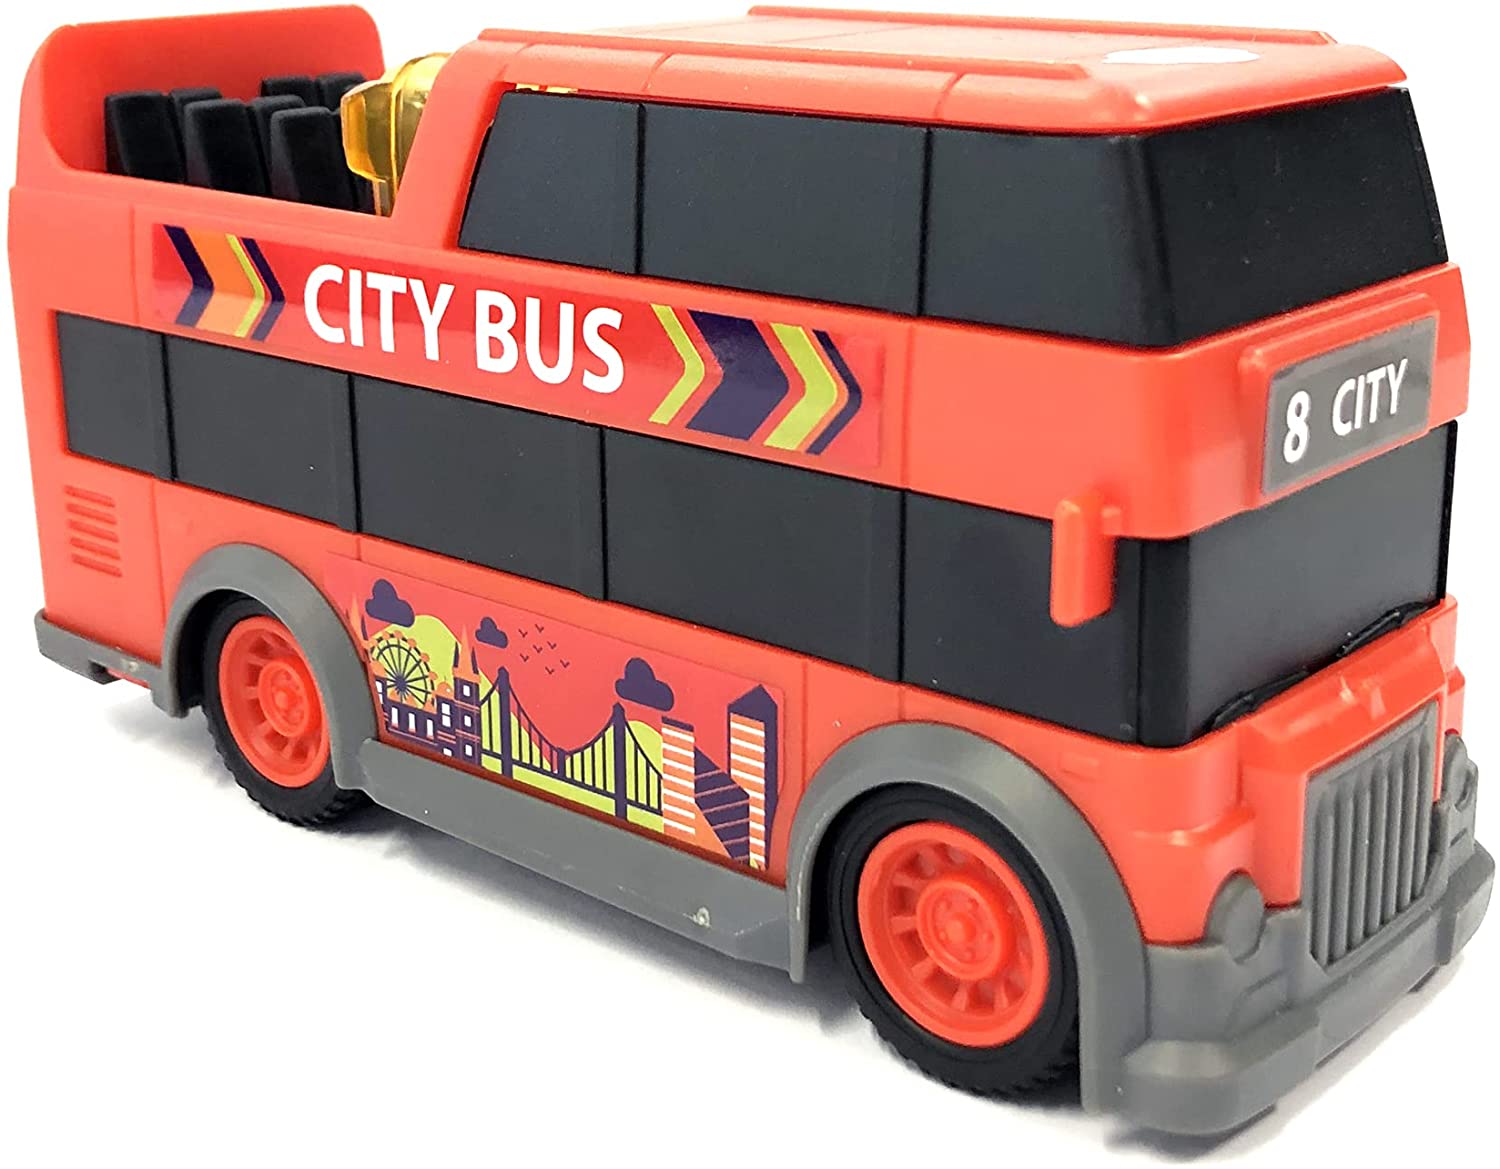 Masina - City Bus, 15 cm | Dickie Toys